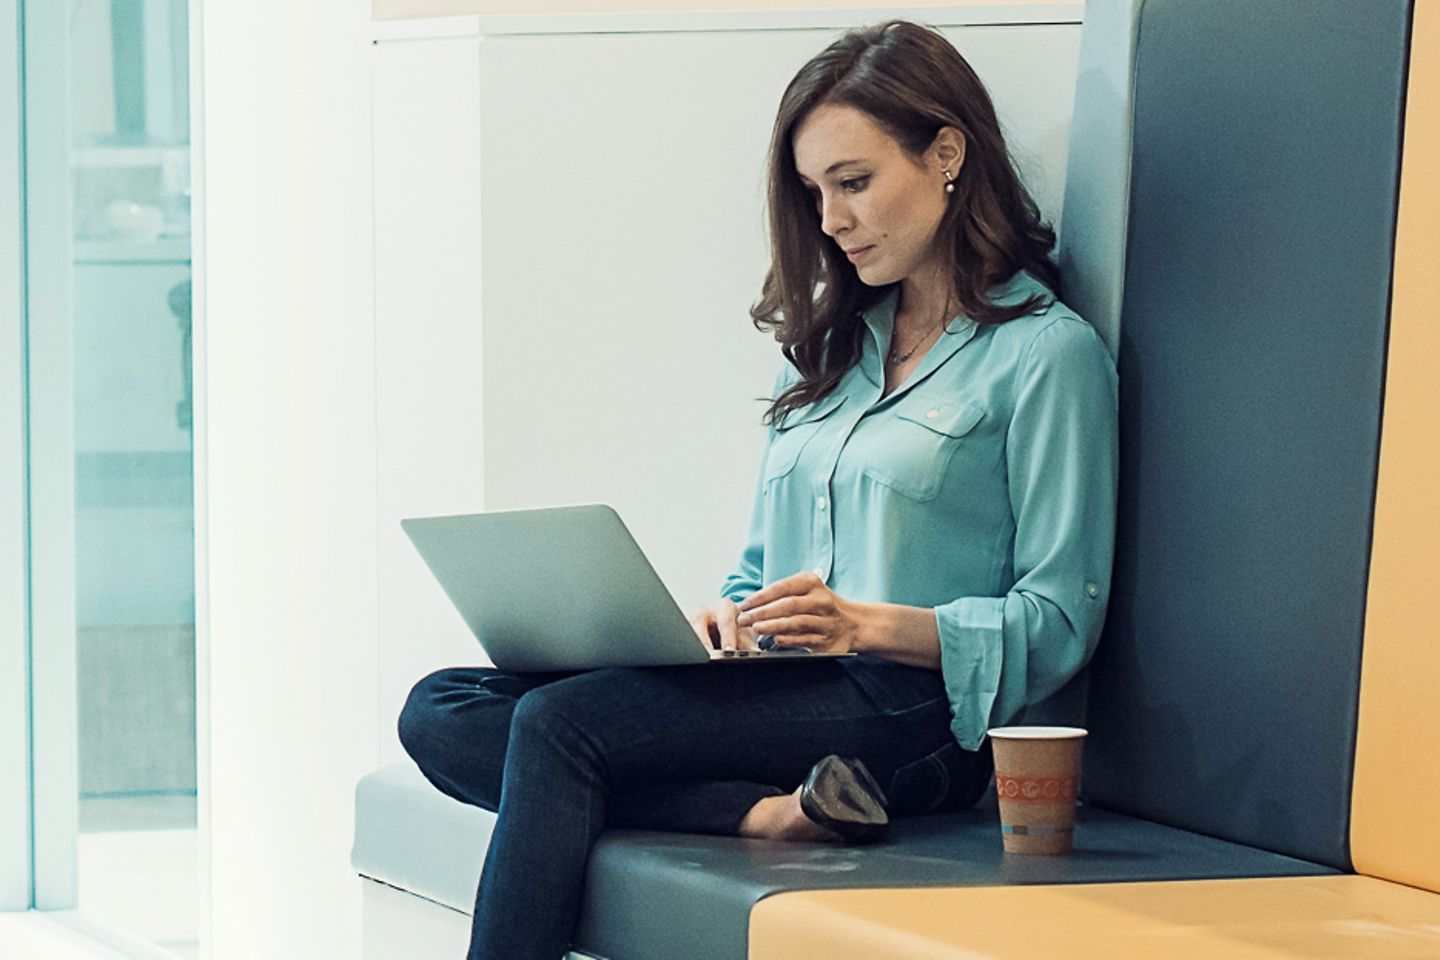 Uma jovem senta-se com o laptop no colo na sala de um escritório iluminada